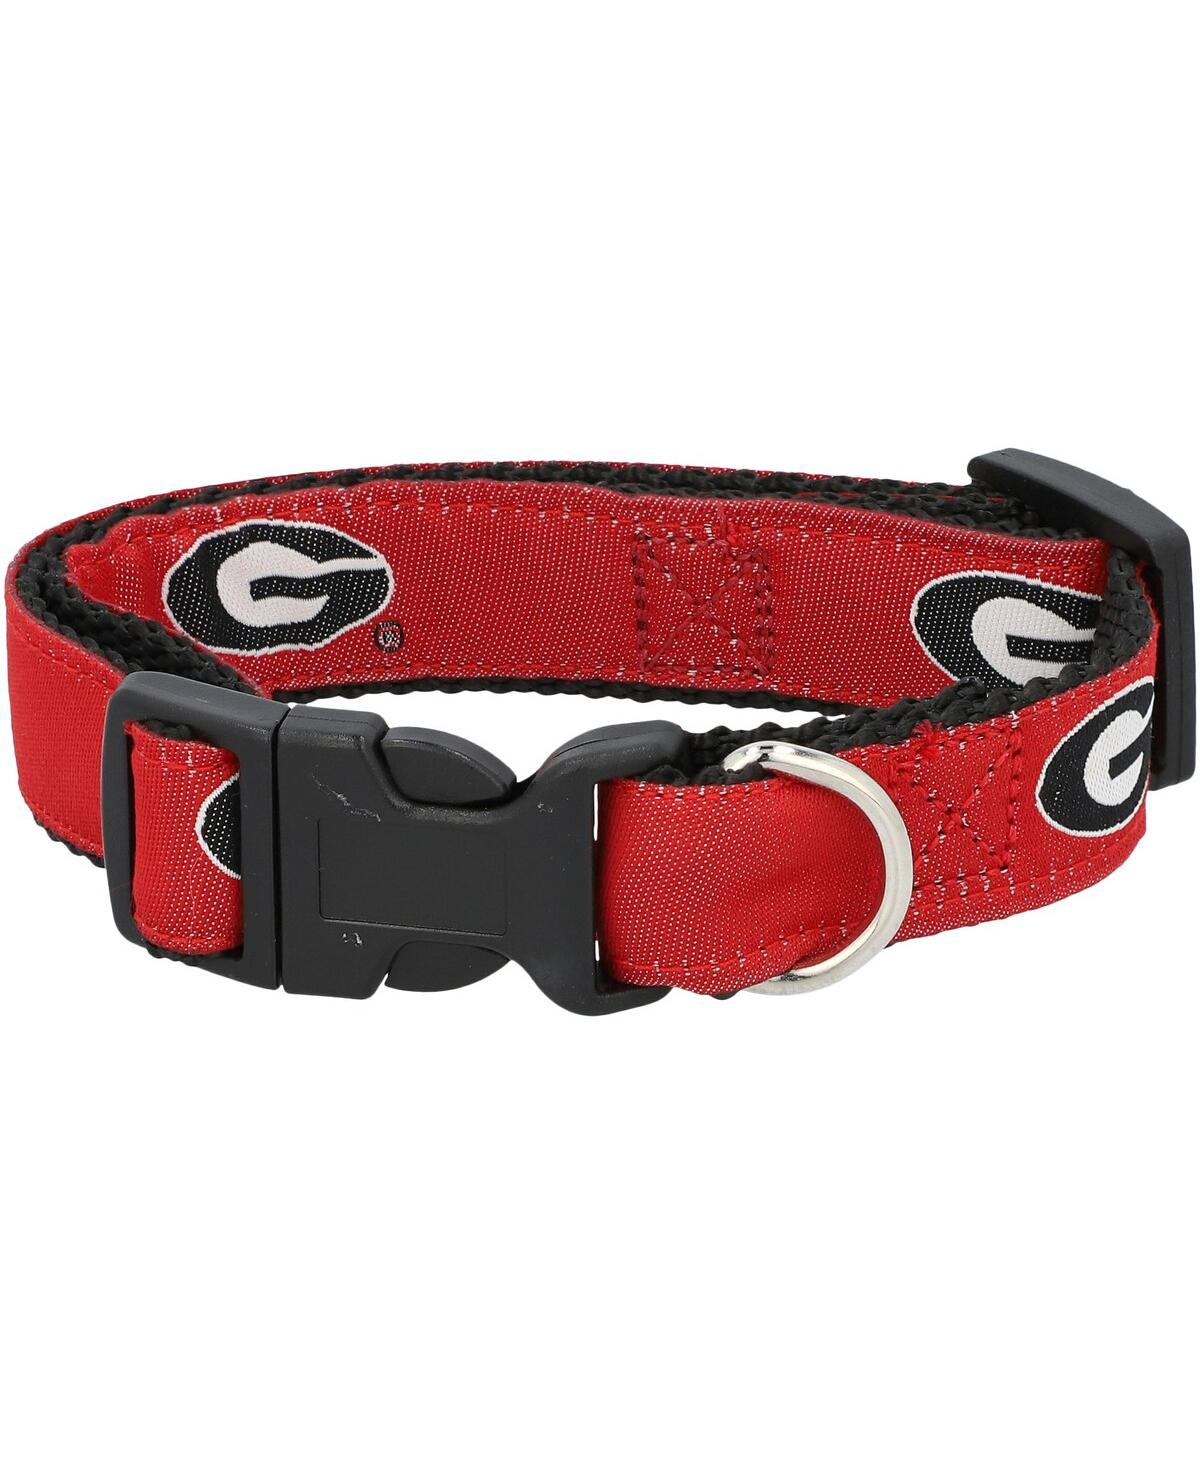 Georgia Bulldogs Narrow Dog Collar - Red